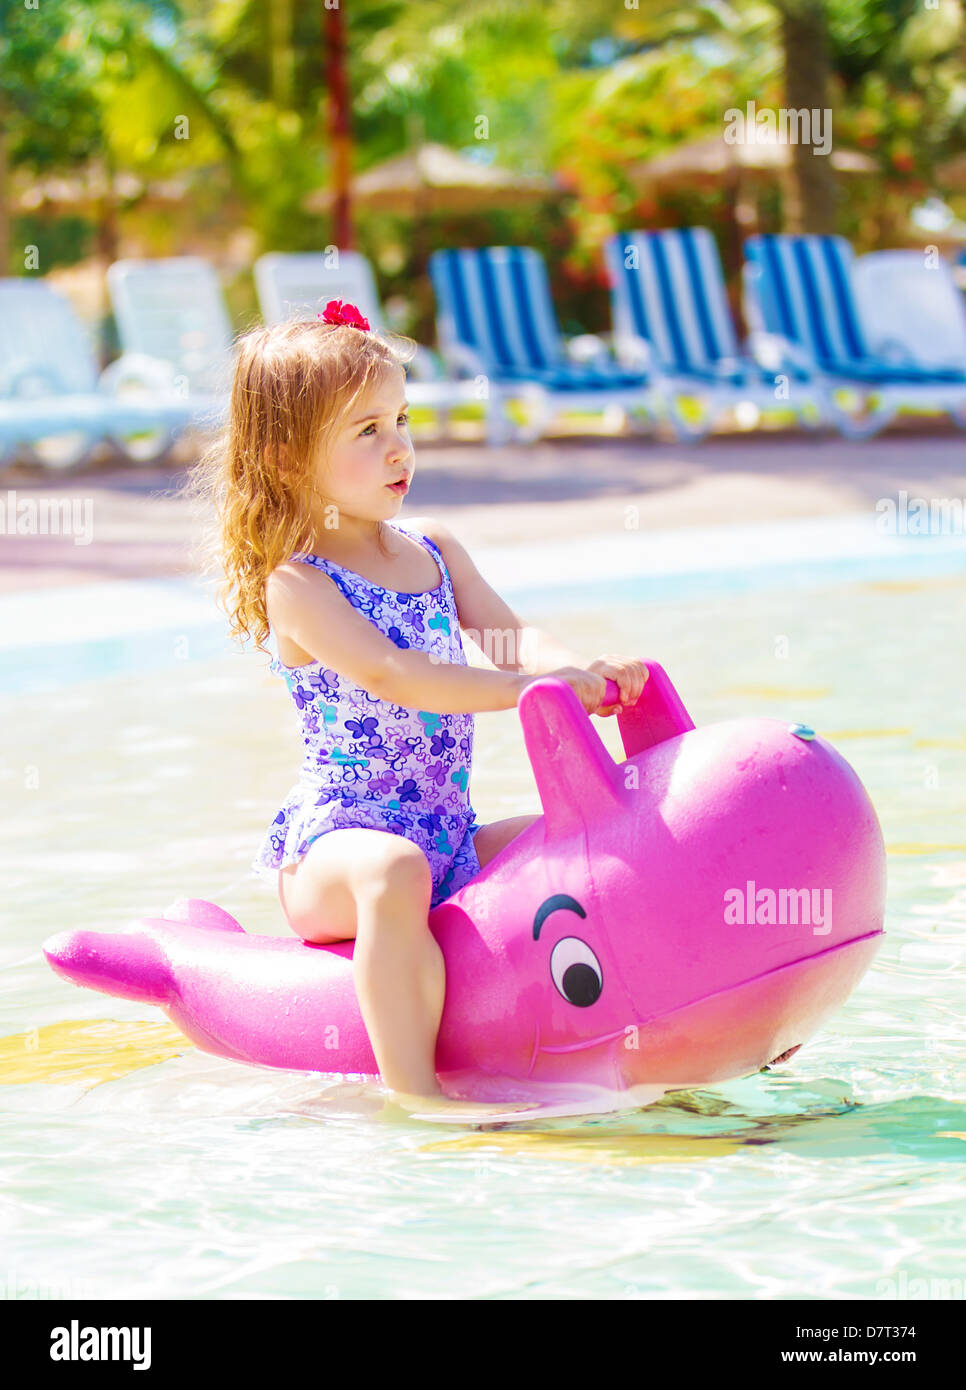 Niedliche kleine Mädchen schweben im Aquapark, Spaß im Pool in Kindertagesstätten, Sommerferien, Wasserattraktionen, glückliche Kindheit Stockfoto